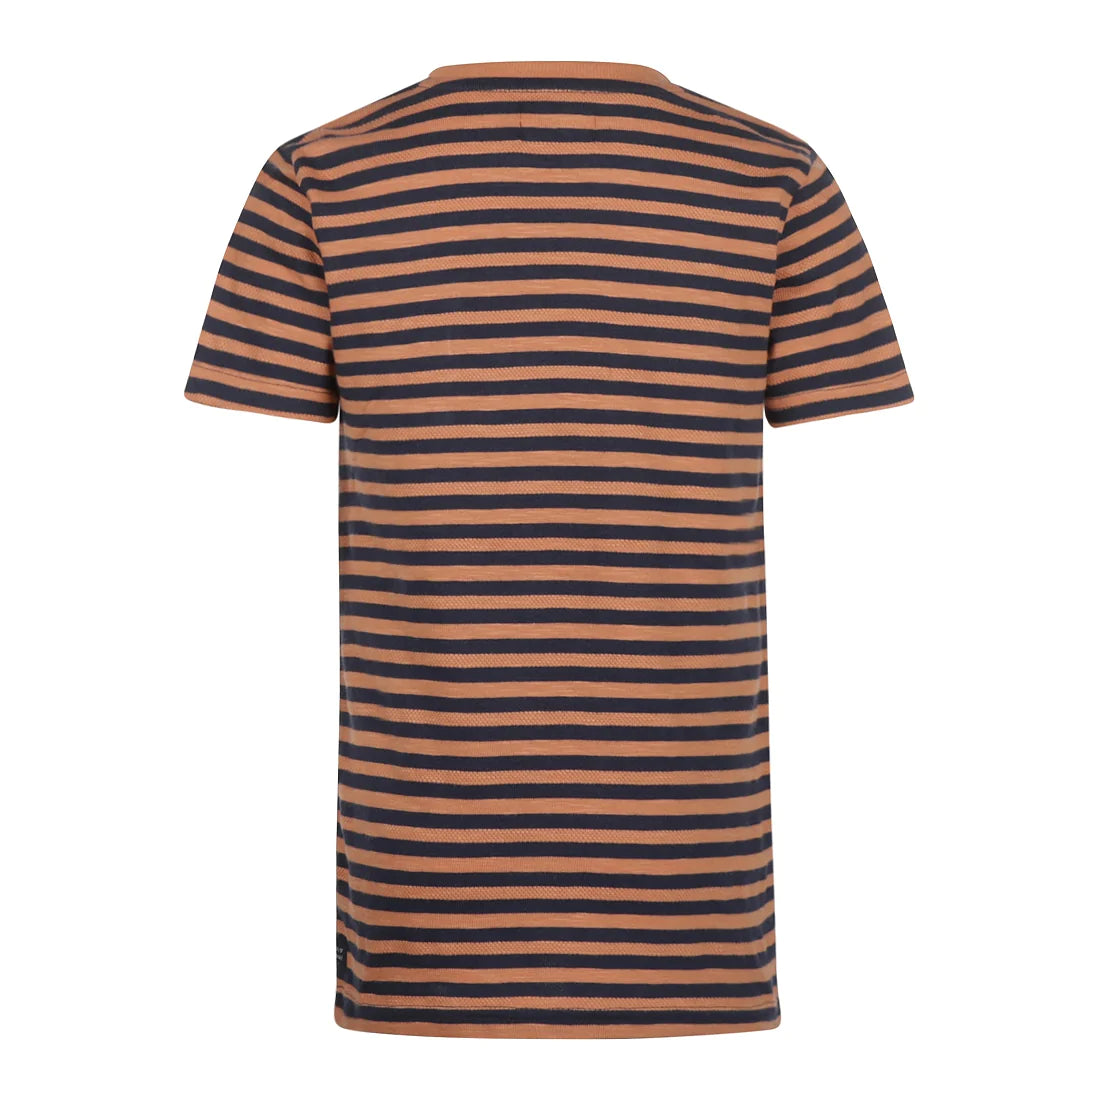 Jongens T-shirt ss van No Way Monday in de kleur Faded cognac in maat 164.